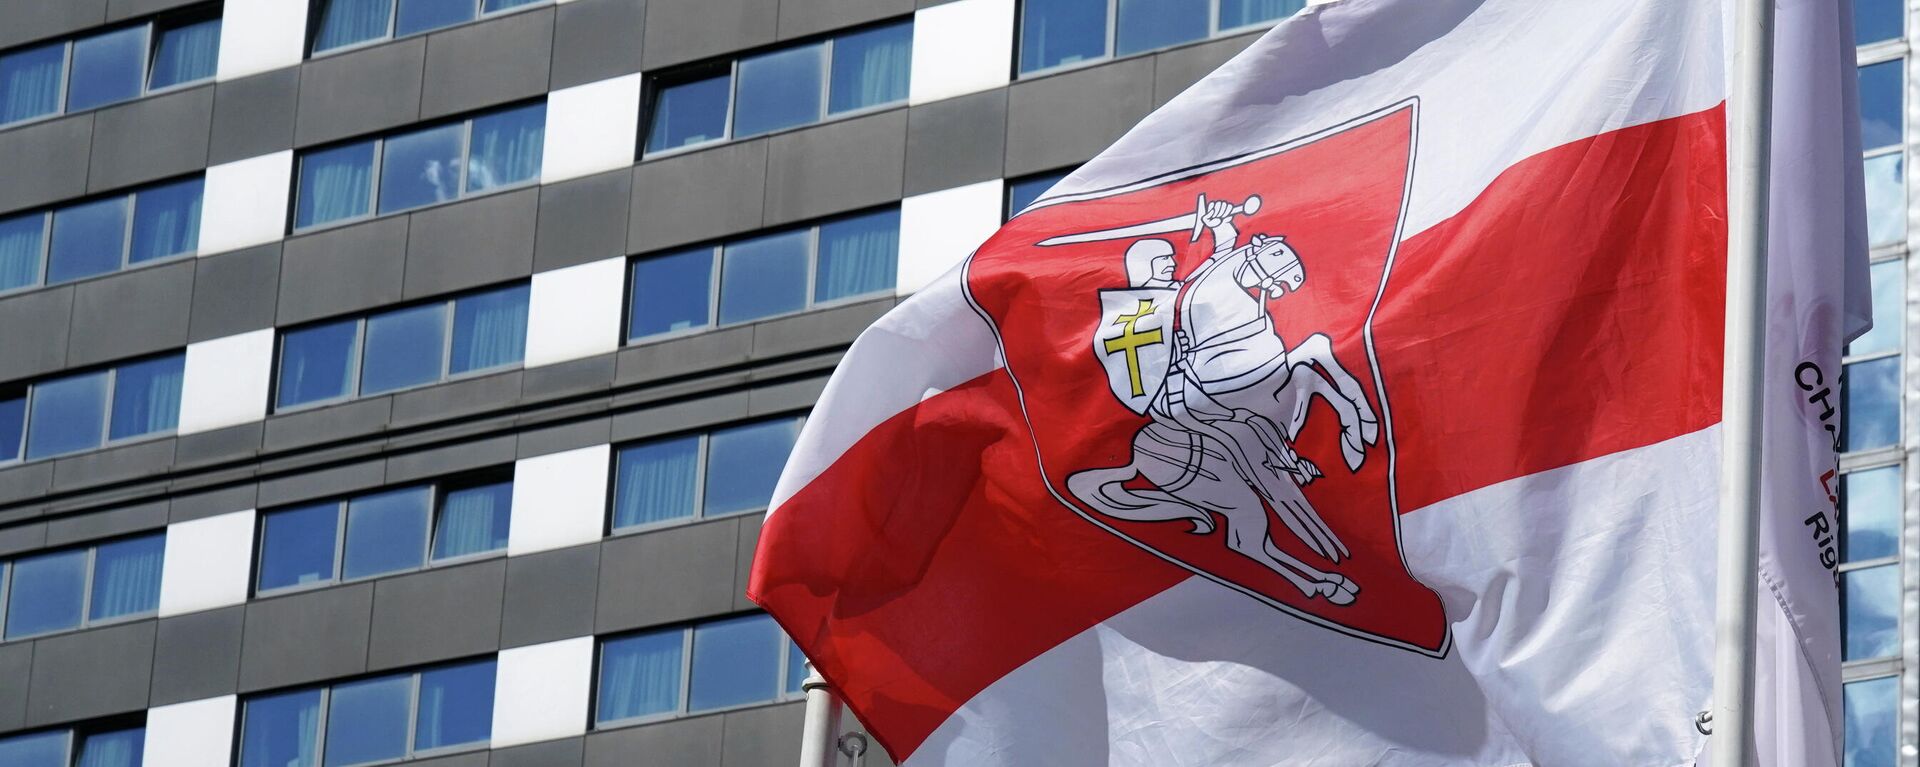 Bandera roja y blanca que utiliza la oposición bielorrusa, en el Campeonato Mundial de Hockey sobre Hielo - Sputnik Mundo, 1920, 25.05.2021